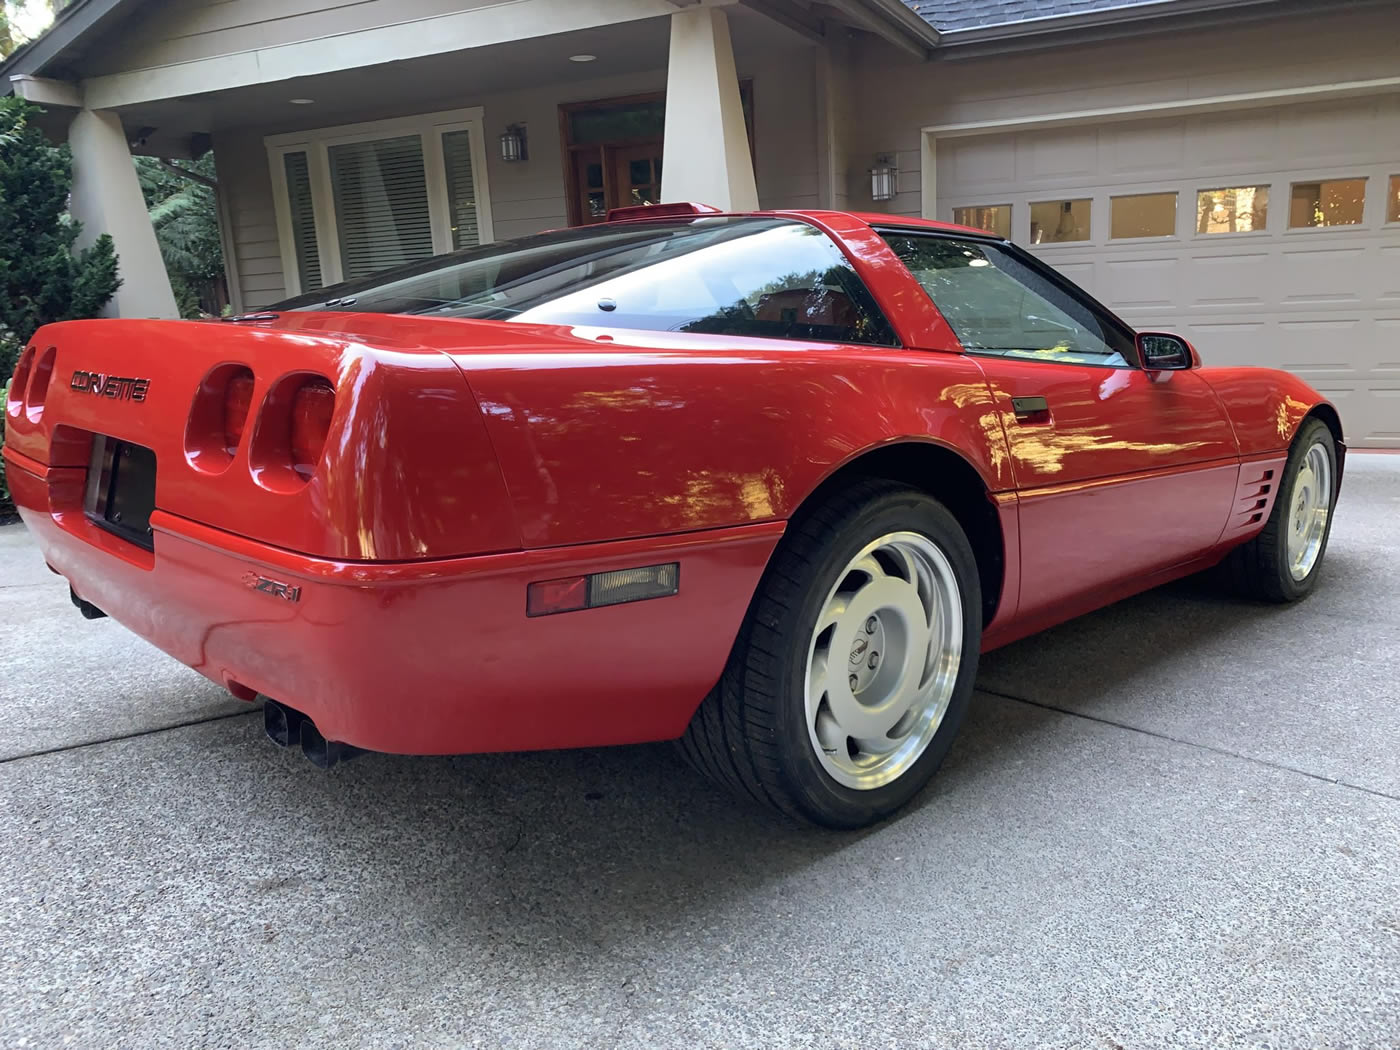 1991 Corvette ZR-1 in Bright Red